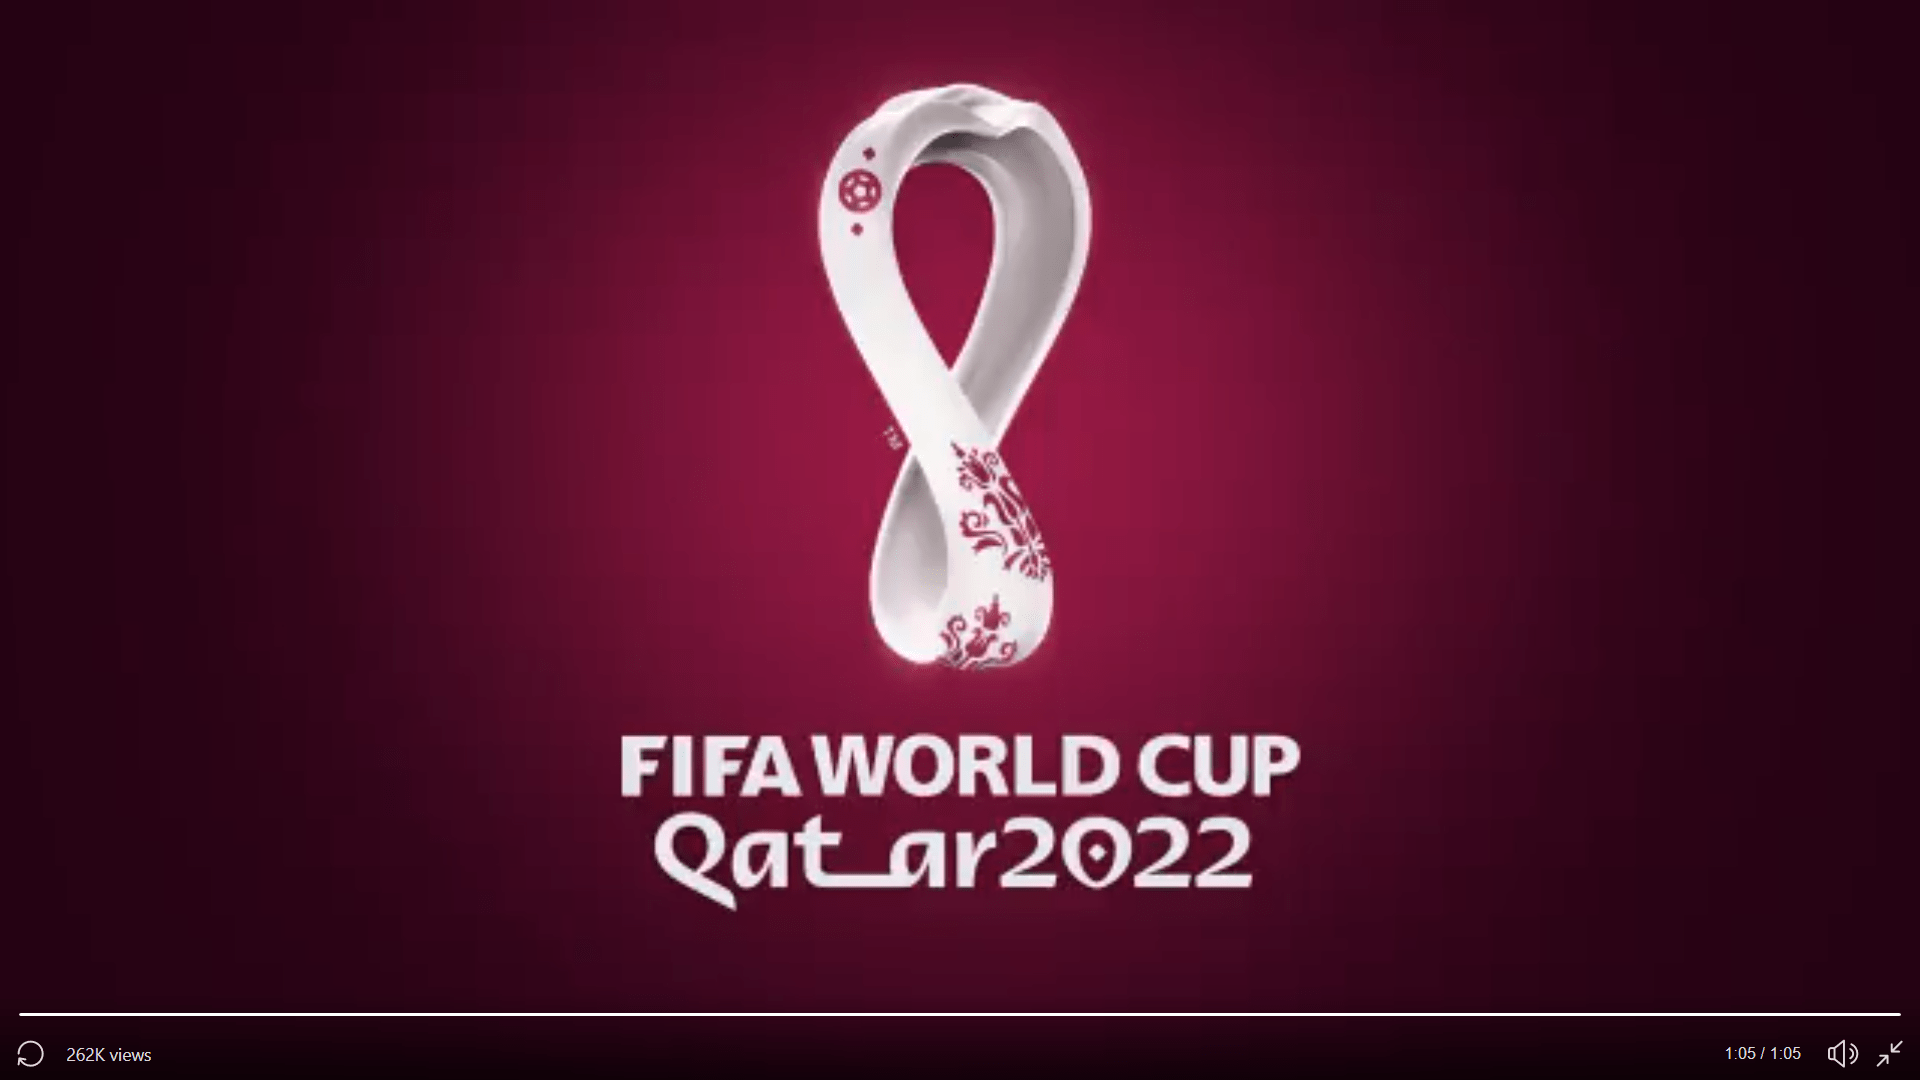 À peine tournée la page de l'euro, une autre grande compétition se profile, la coupe du monde de football . Coupe du monde de Qatar 2022 : le logo dÃ©voilÃ© simultanÃ©ment mardi dans